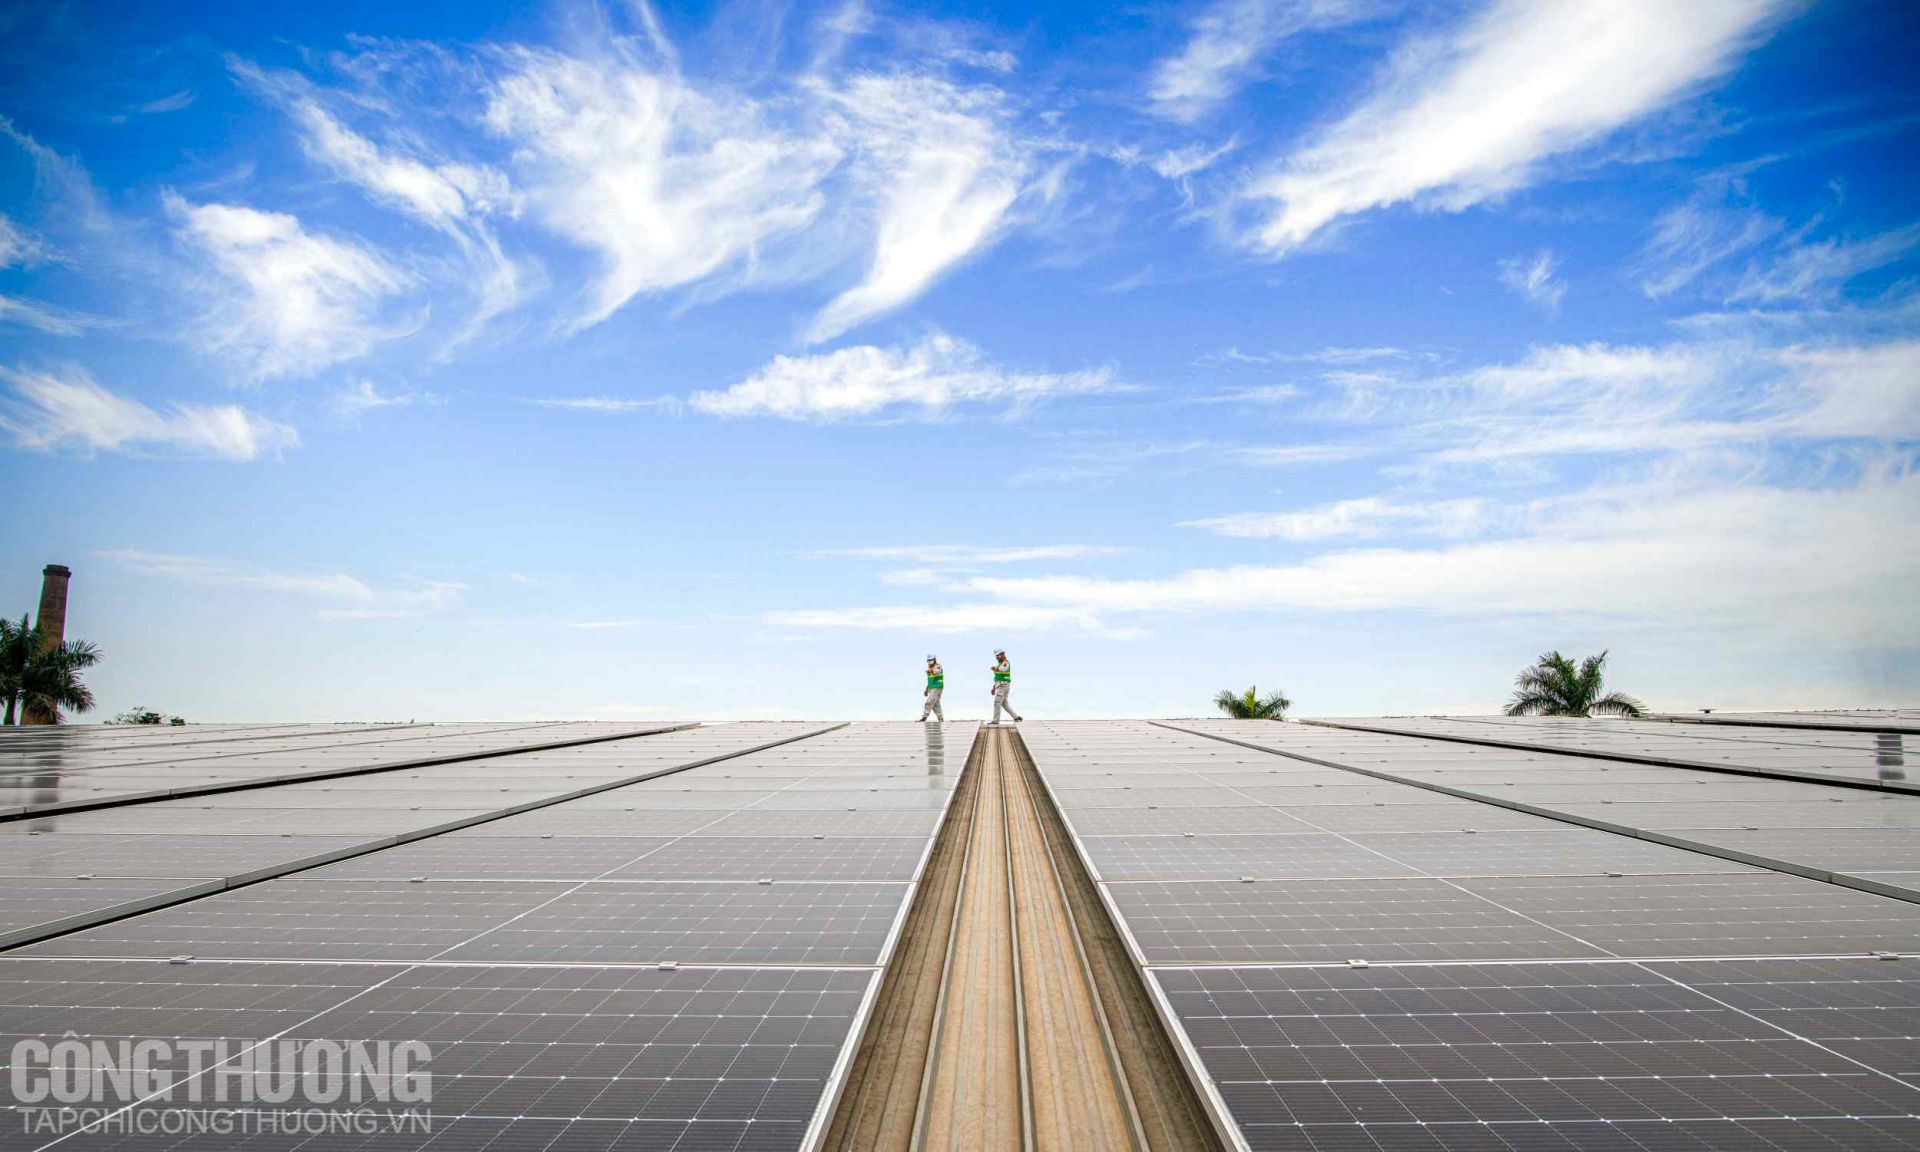 Bộ Công Thương công bố Kết luận kiểm tra việc phát triển điện mặt trời mái nhà tại 10 tỉnh thành